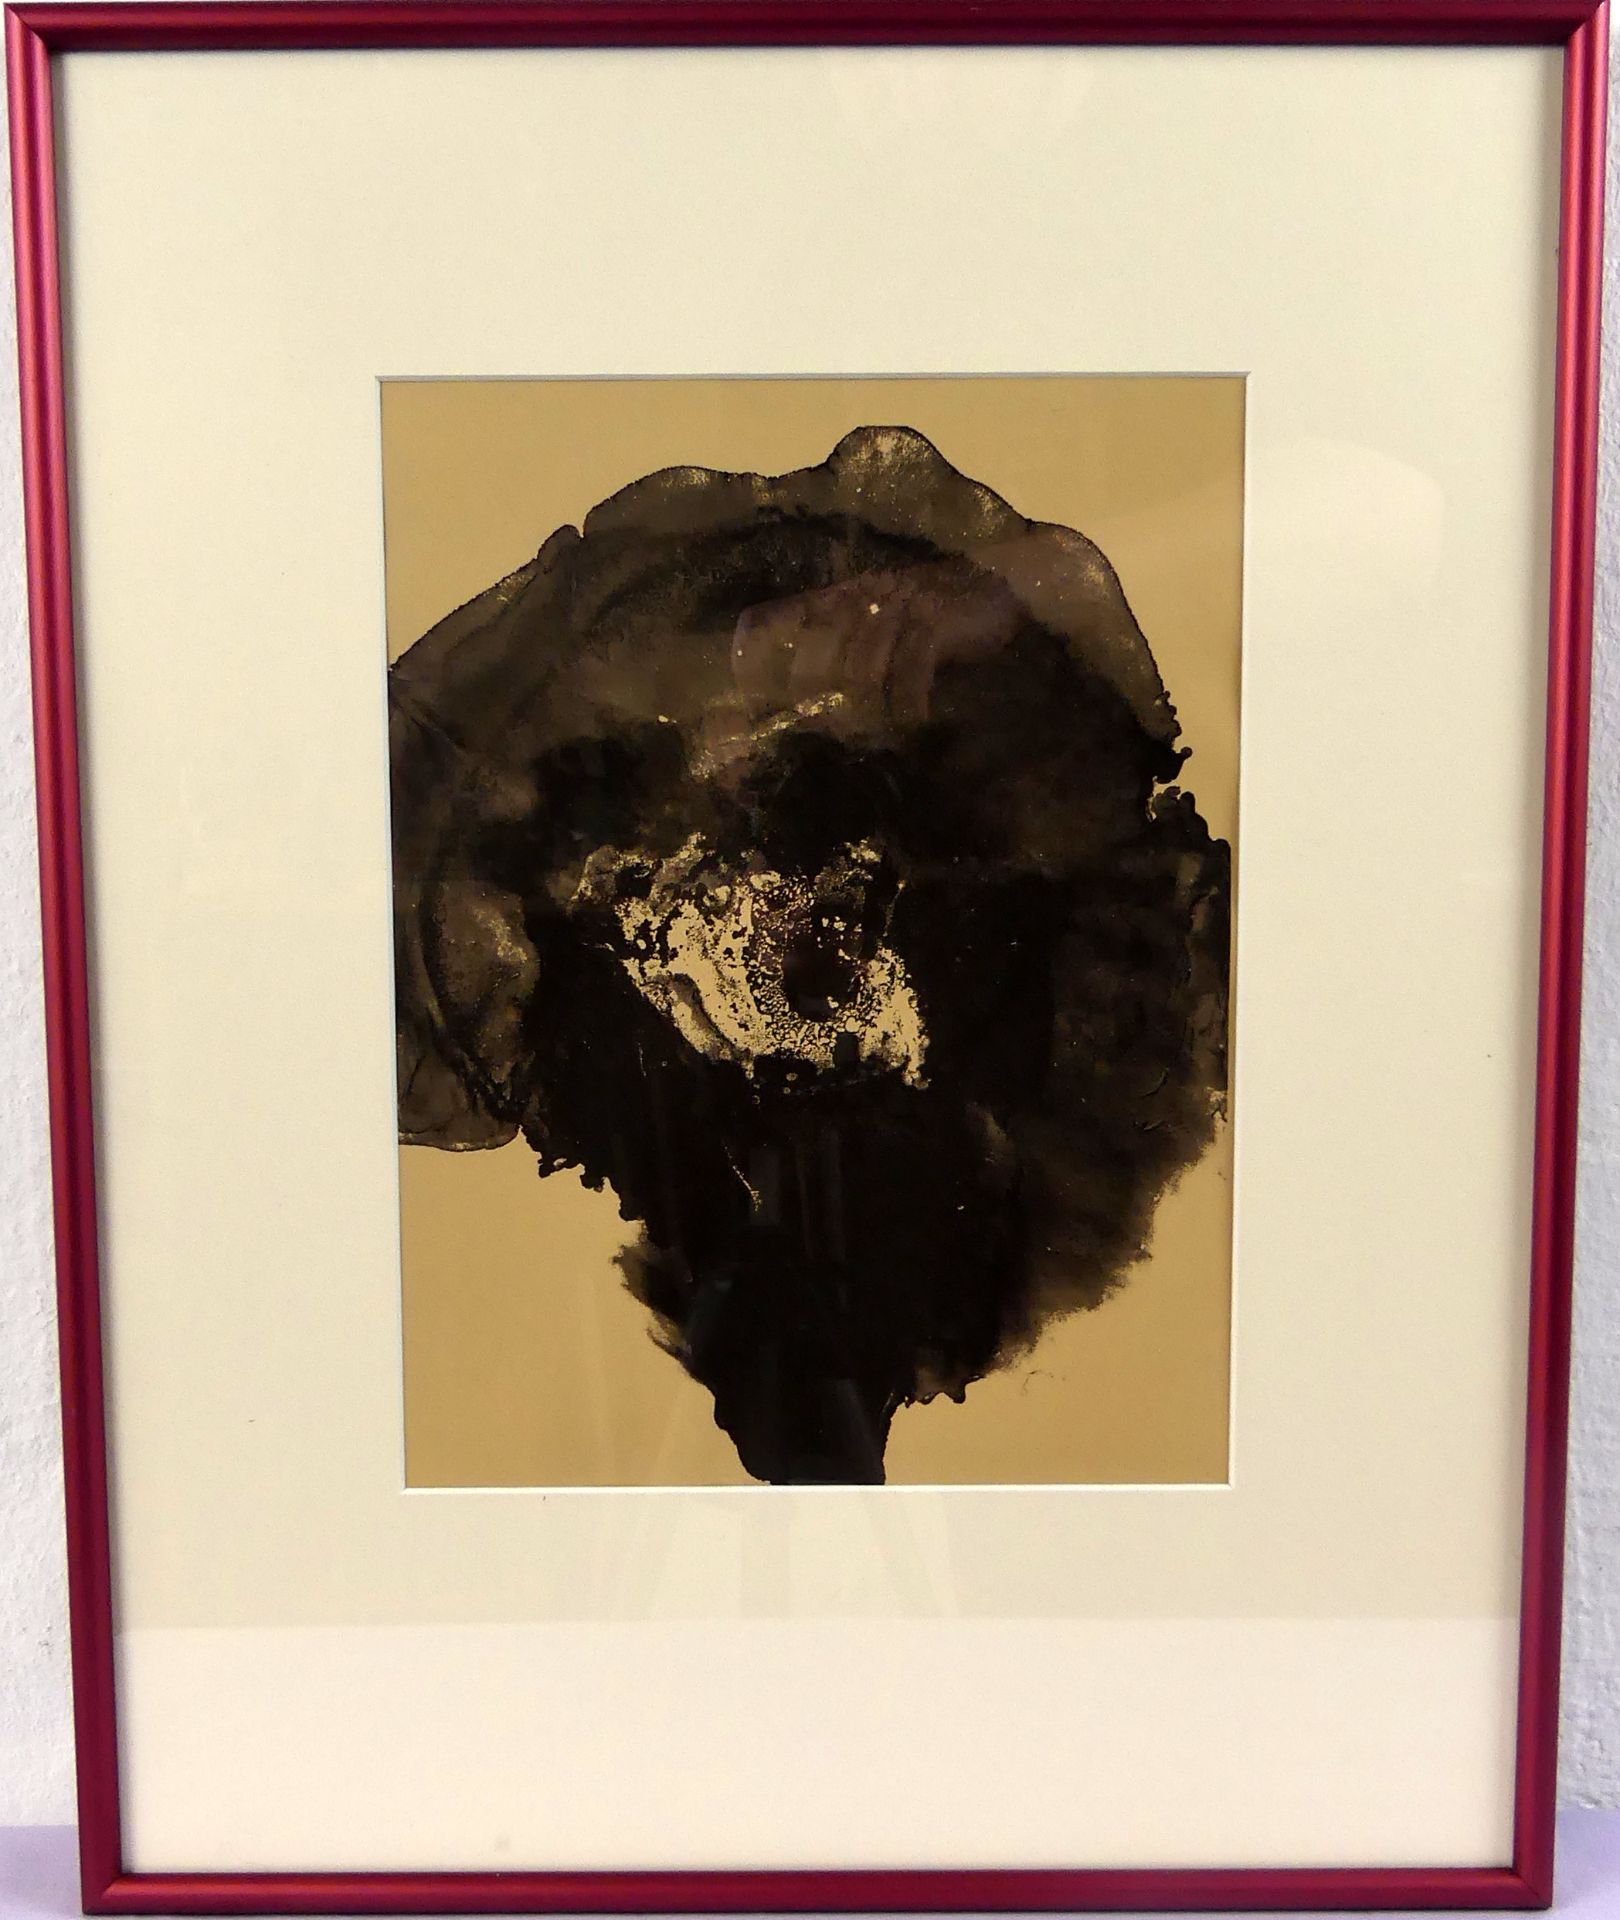 OTTO PIENE (1928-2014), "Feuerblume", Farboffsetlithographie,